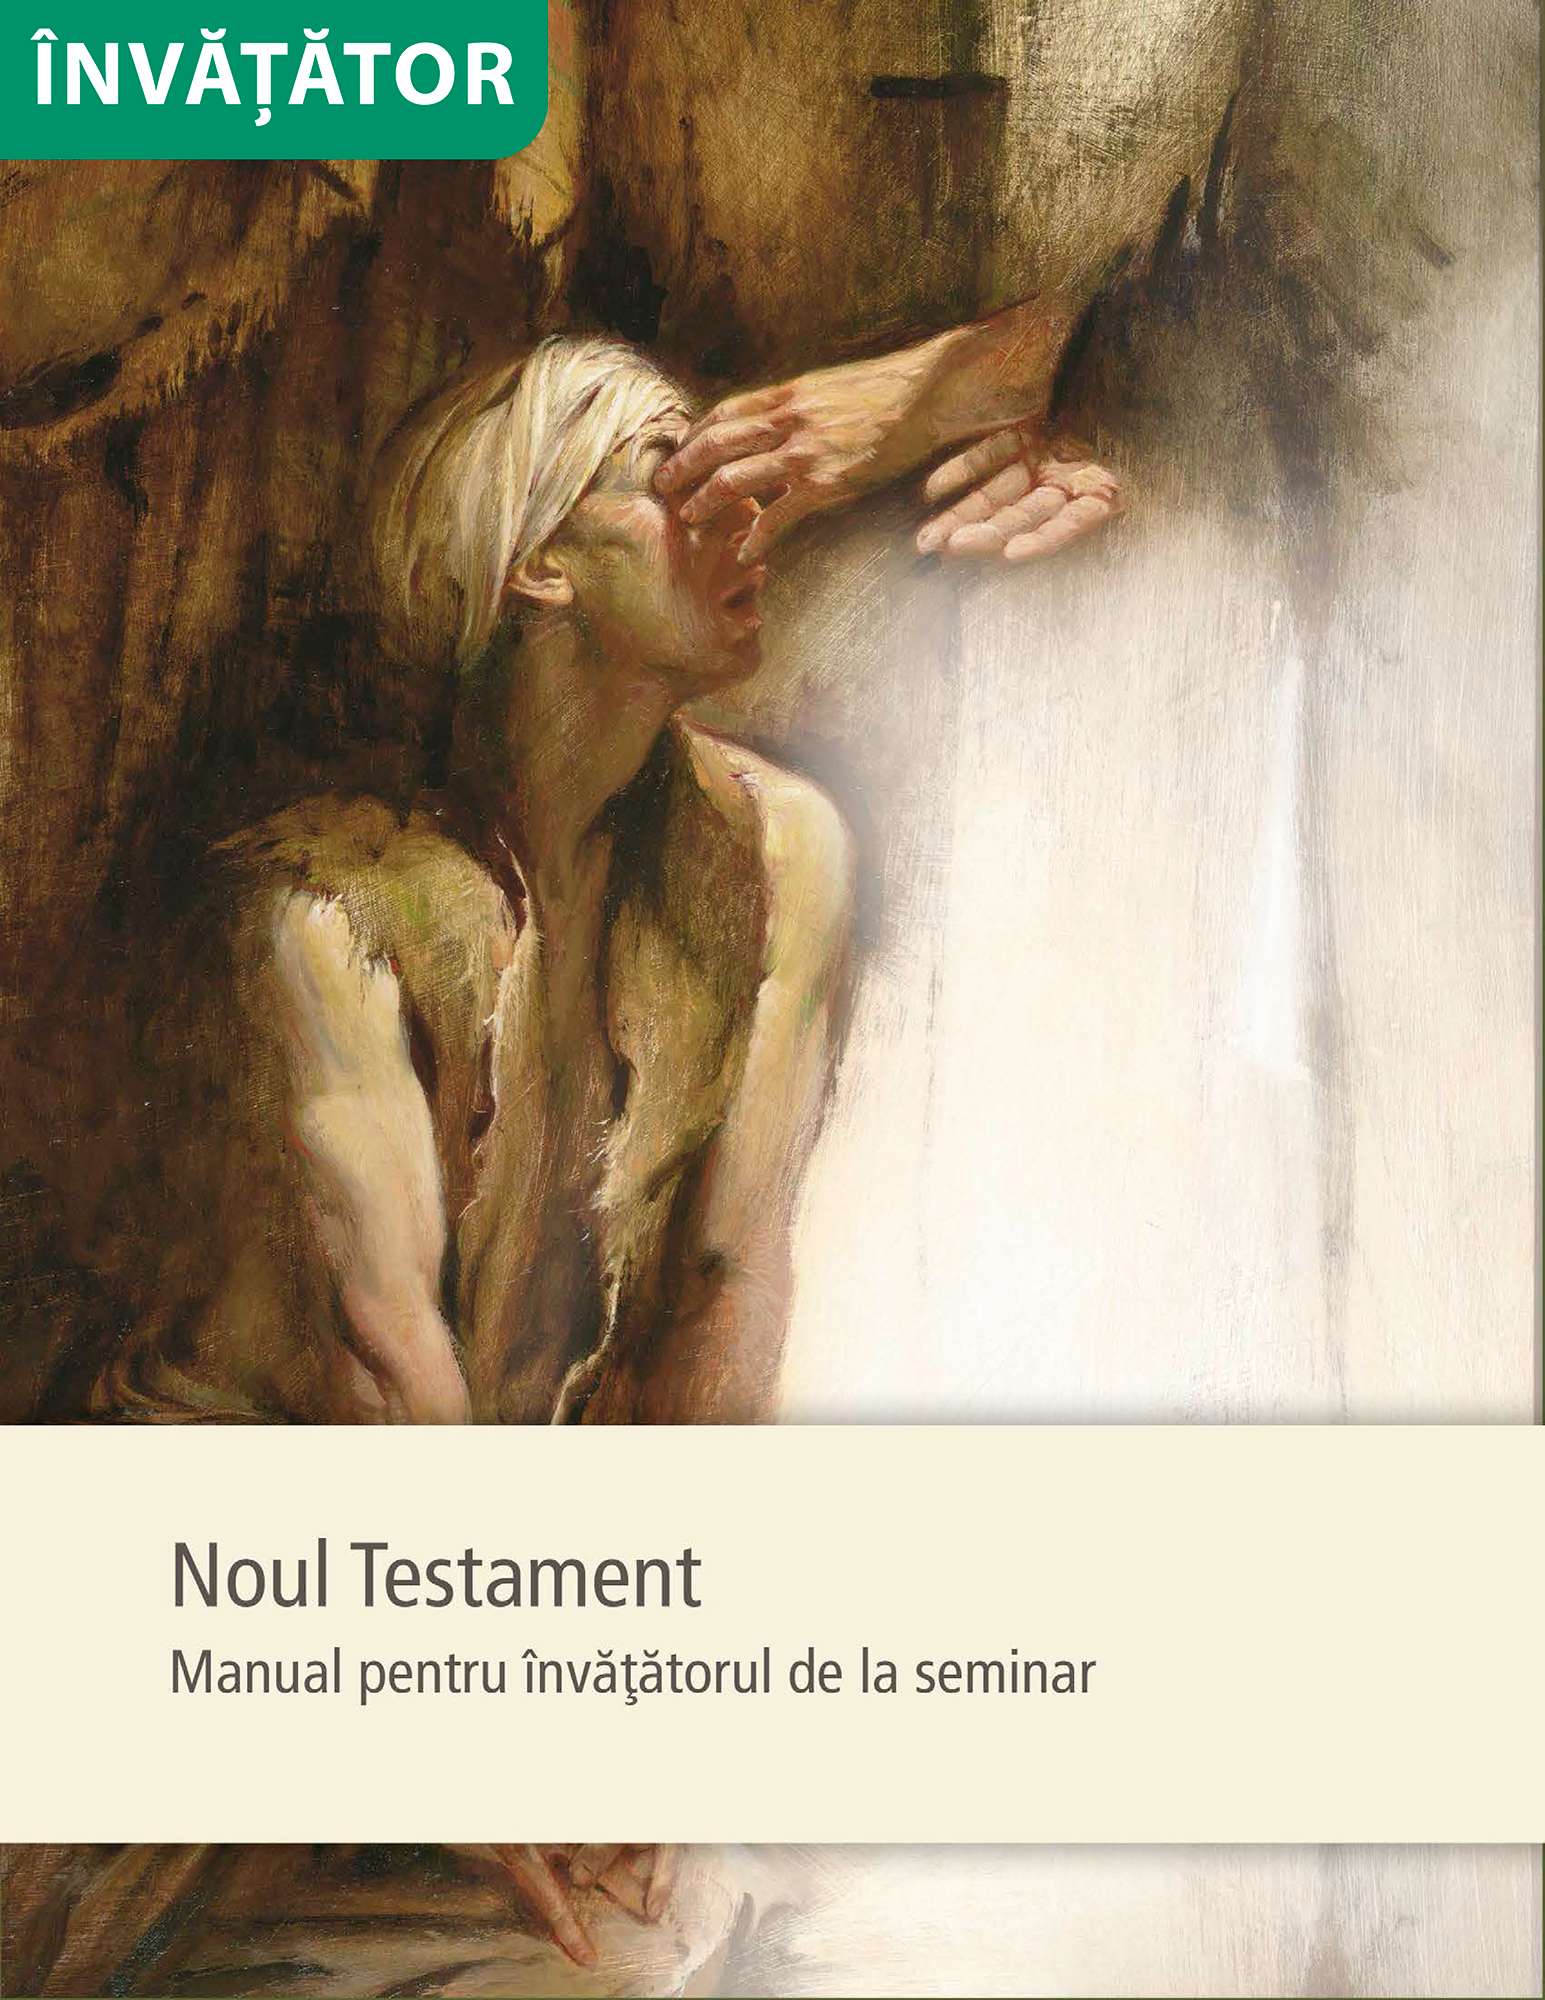 Noul Testament – Manual pentru învăţătorul de la seminar